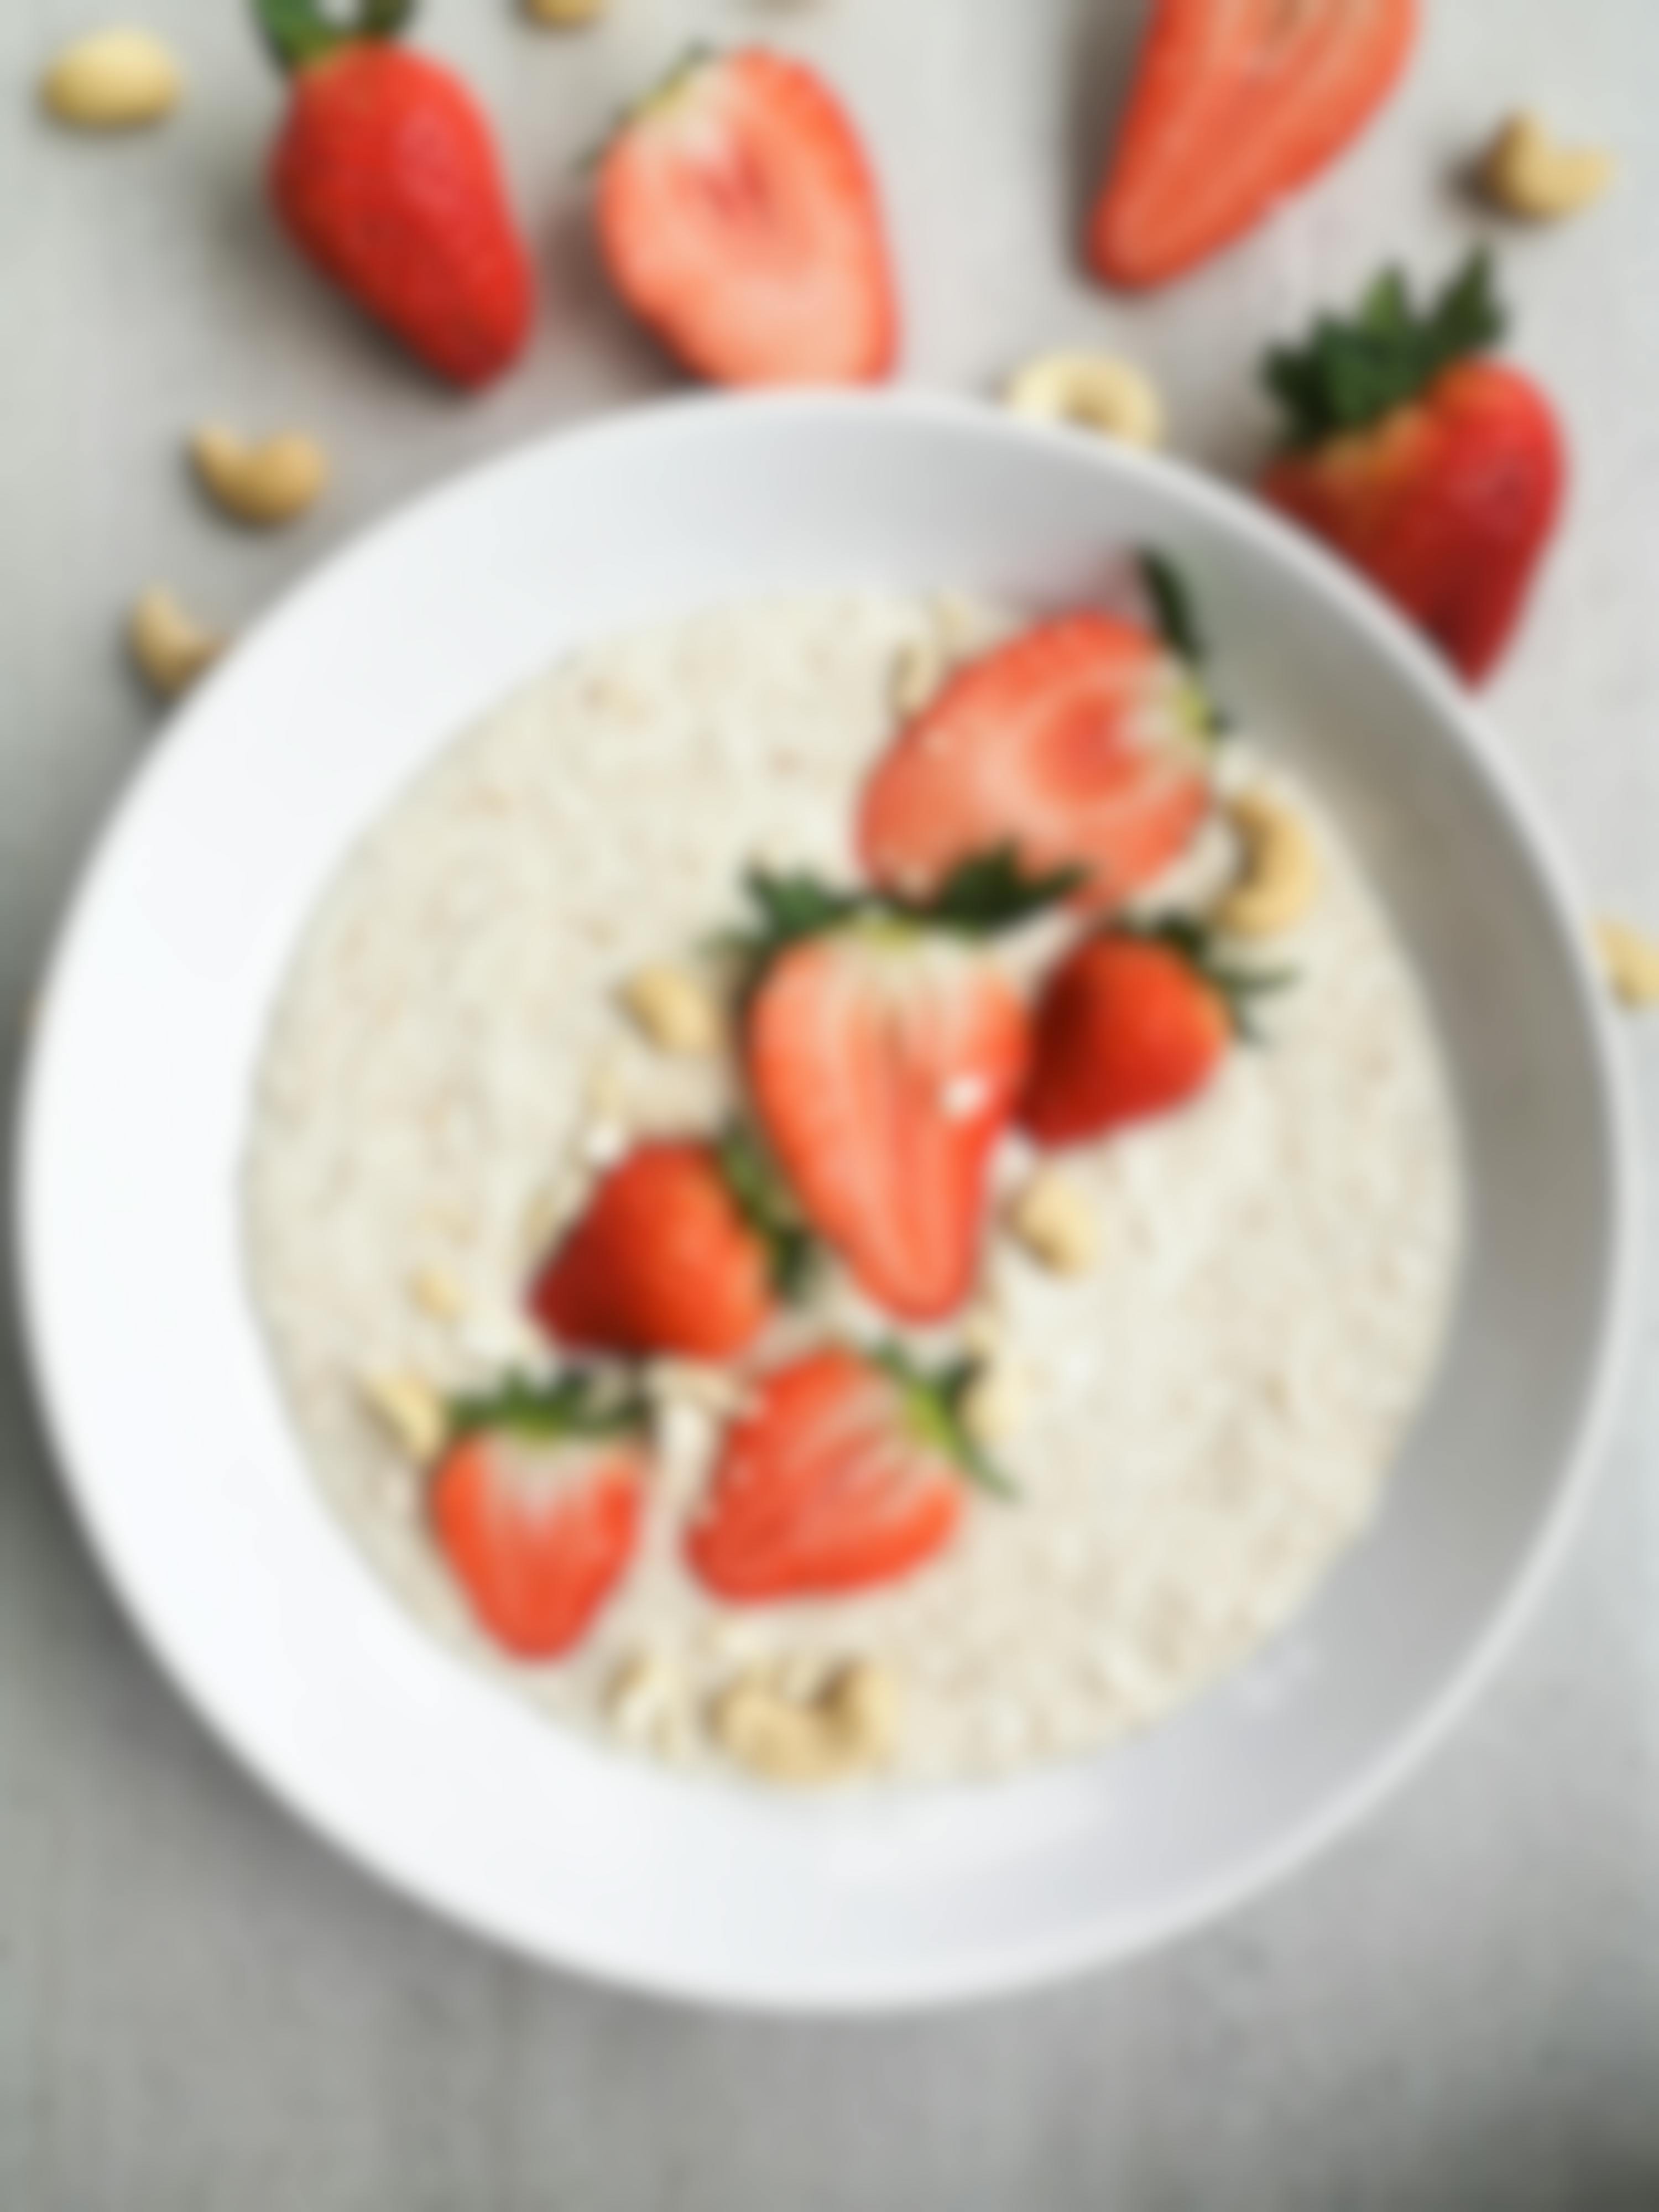 Erdbeer-Cashew-Porridge